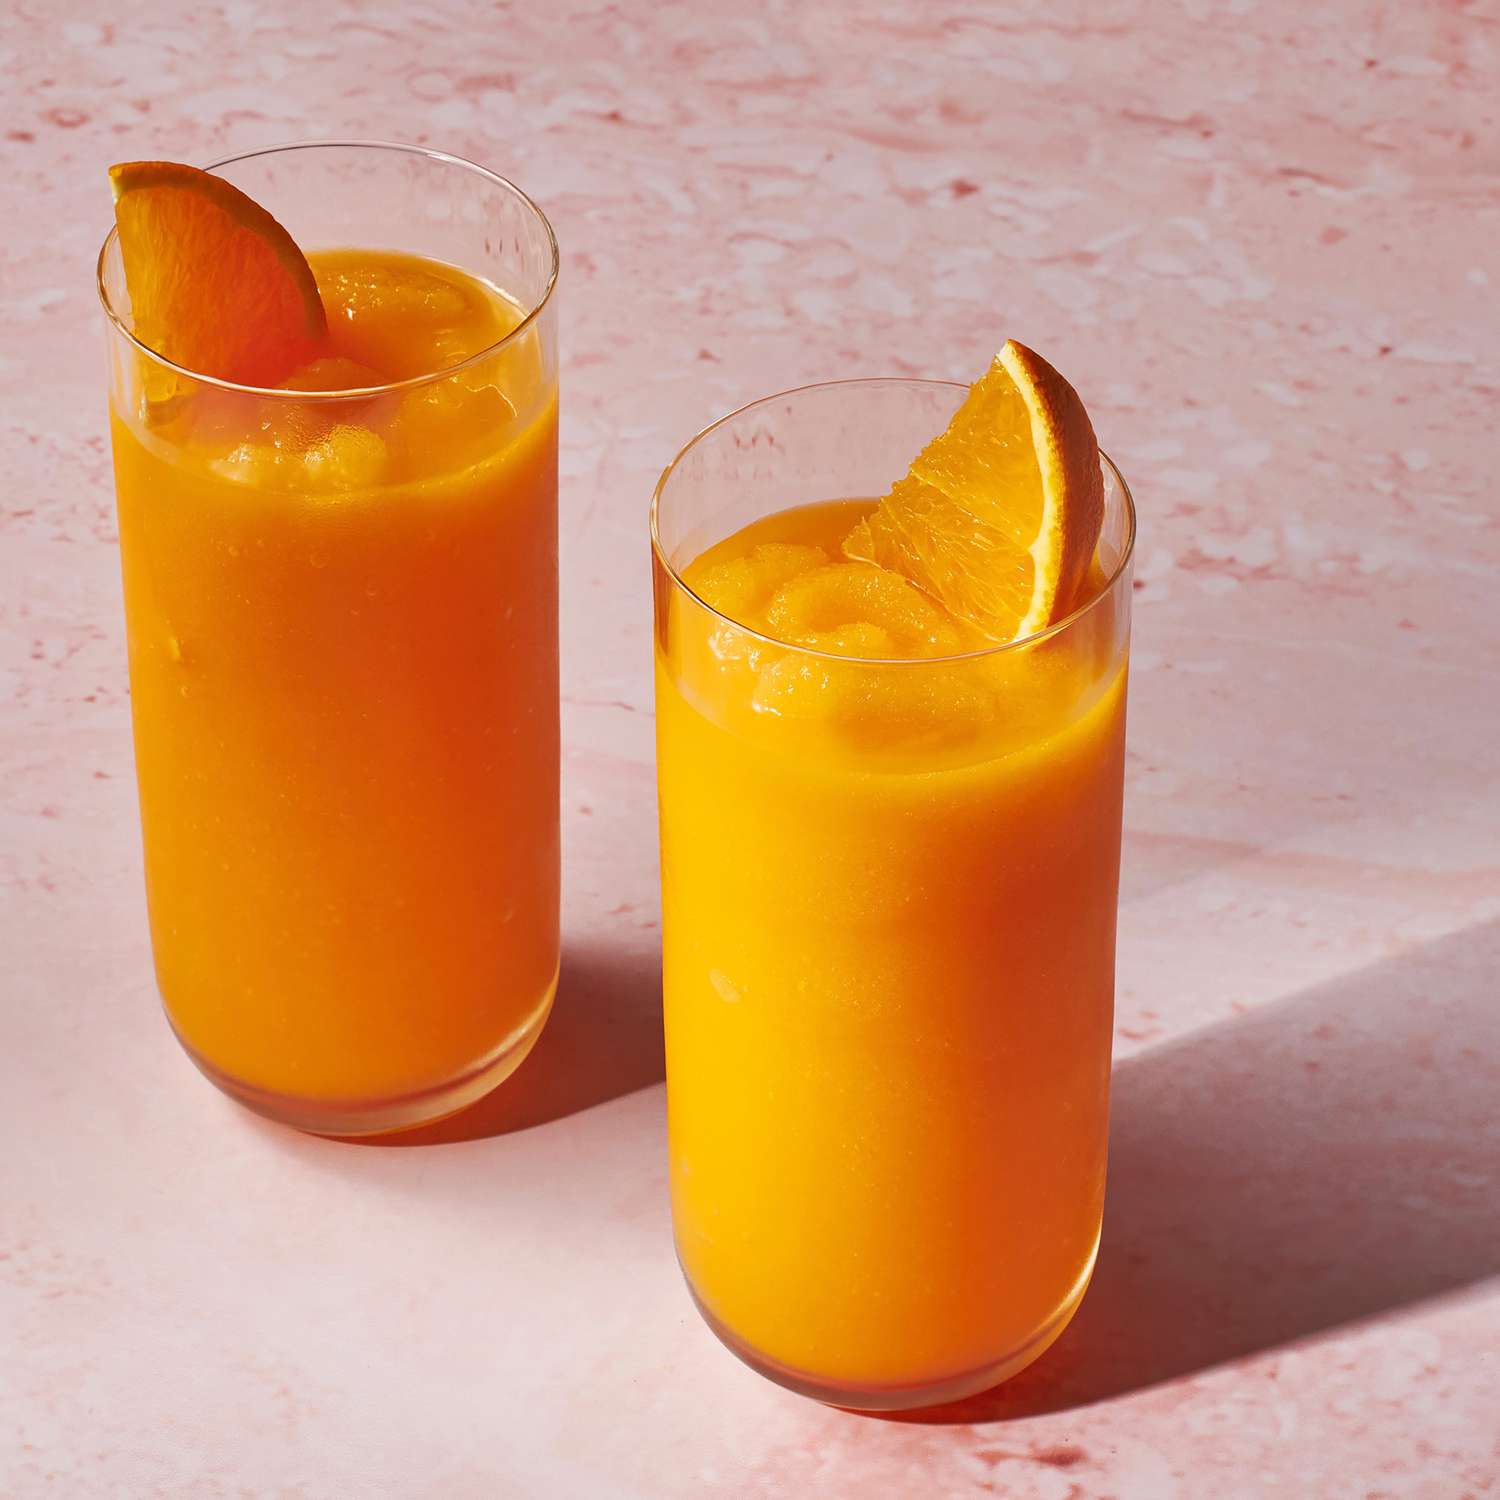 Foto de la receta de batido de zanahoria en dos vasos con rodajas de naranja